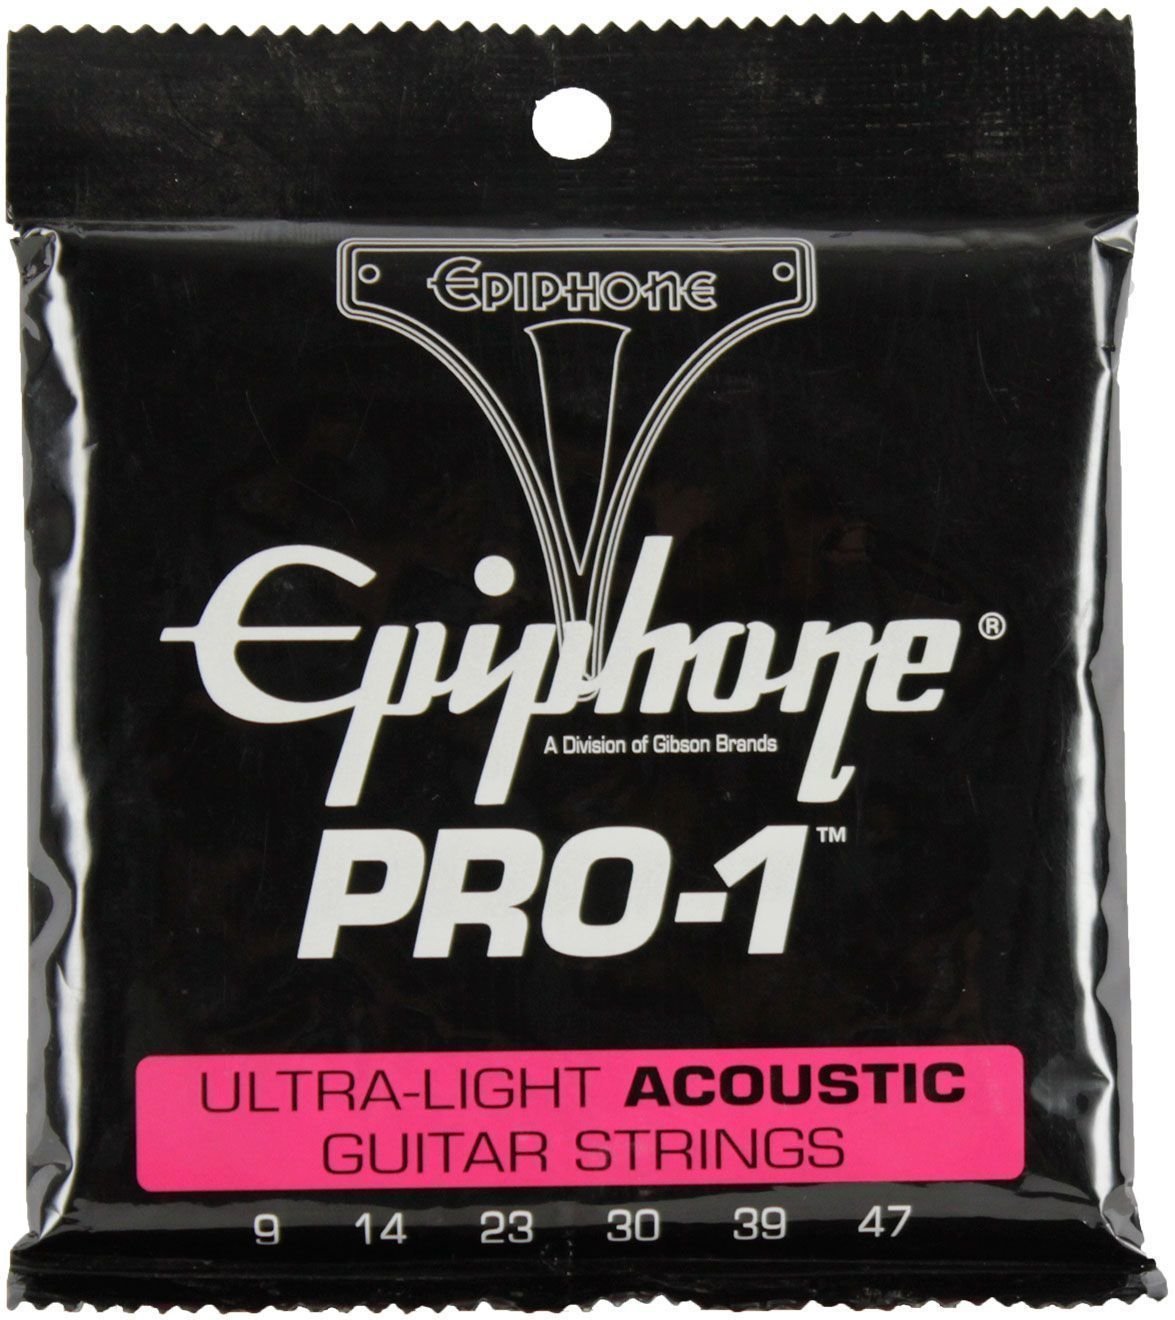 Guitarstrenge Epiphone Pro-1 Ultra-Light Acoustic Strings